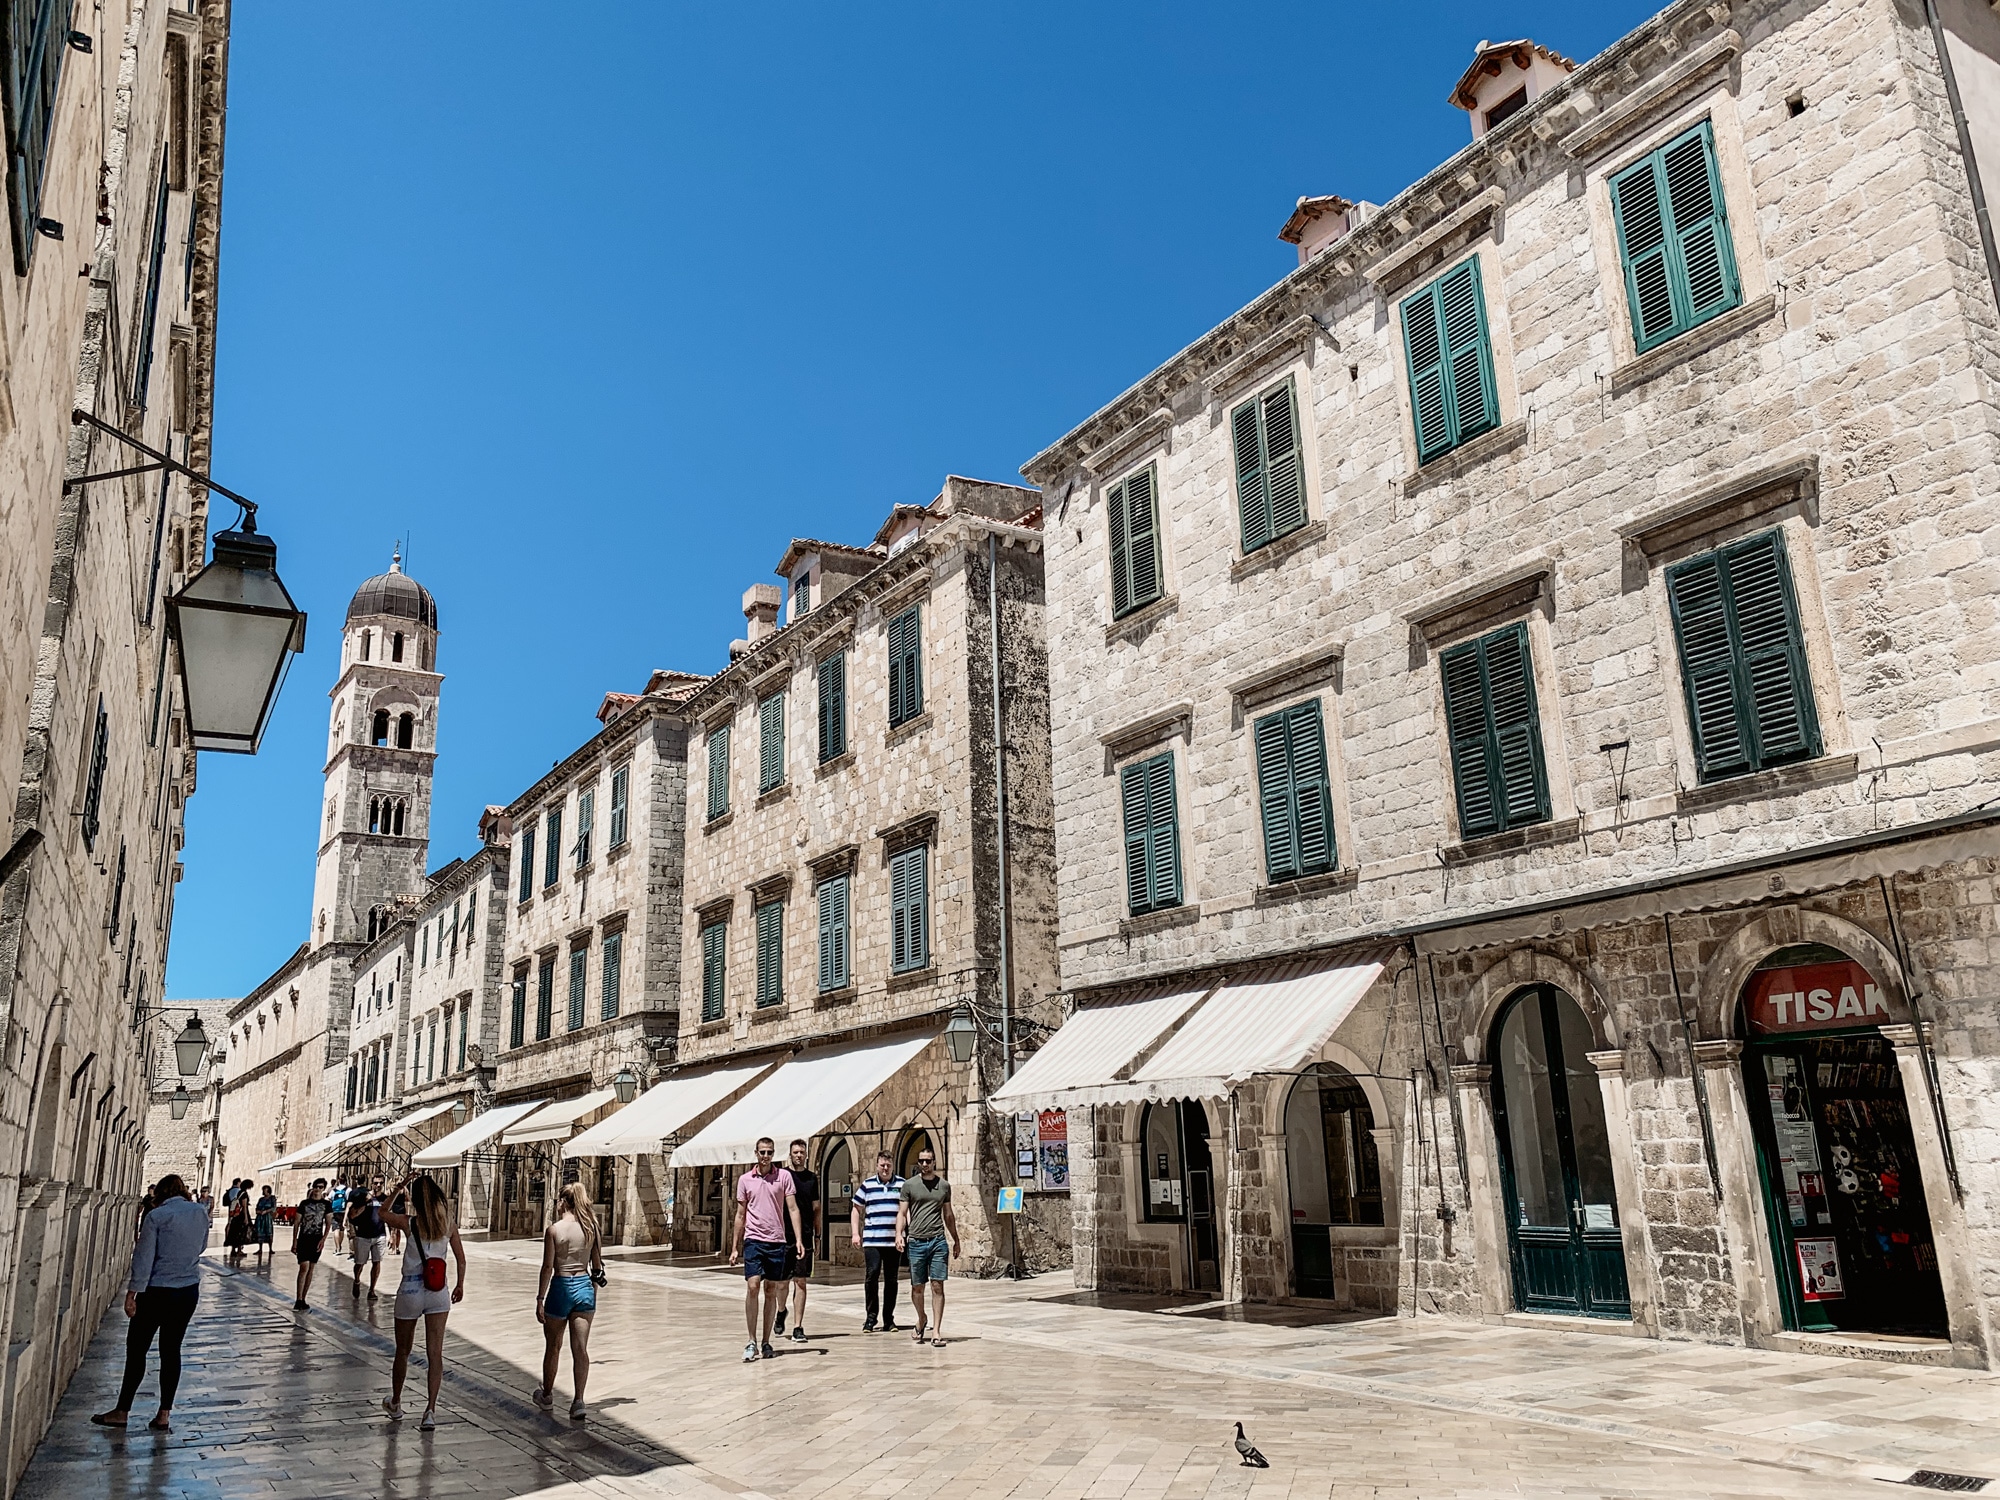 Dubrovnik Sehenswürdigkeiten Top 10: Meine Highlights und Tipps - Stradun Boulevard